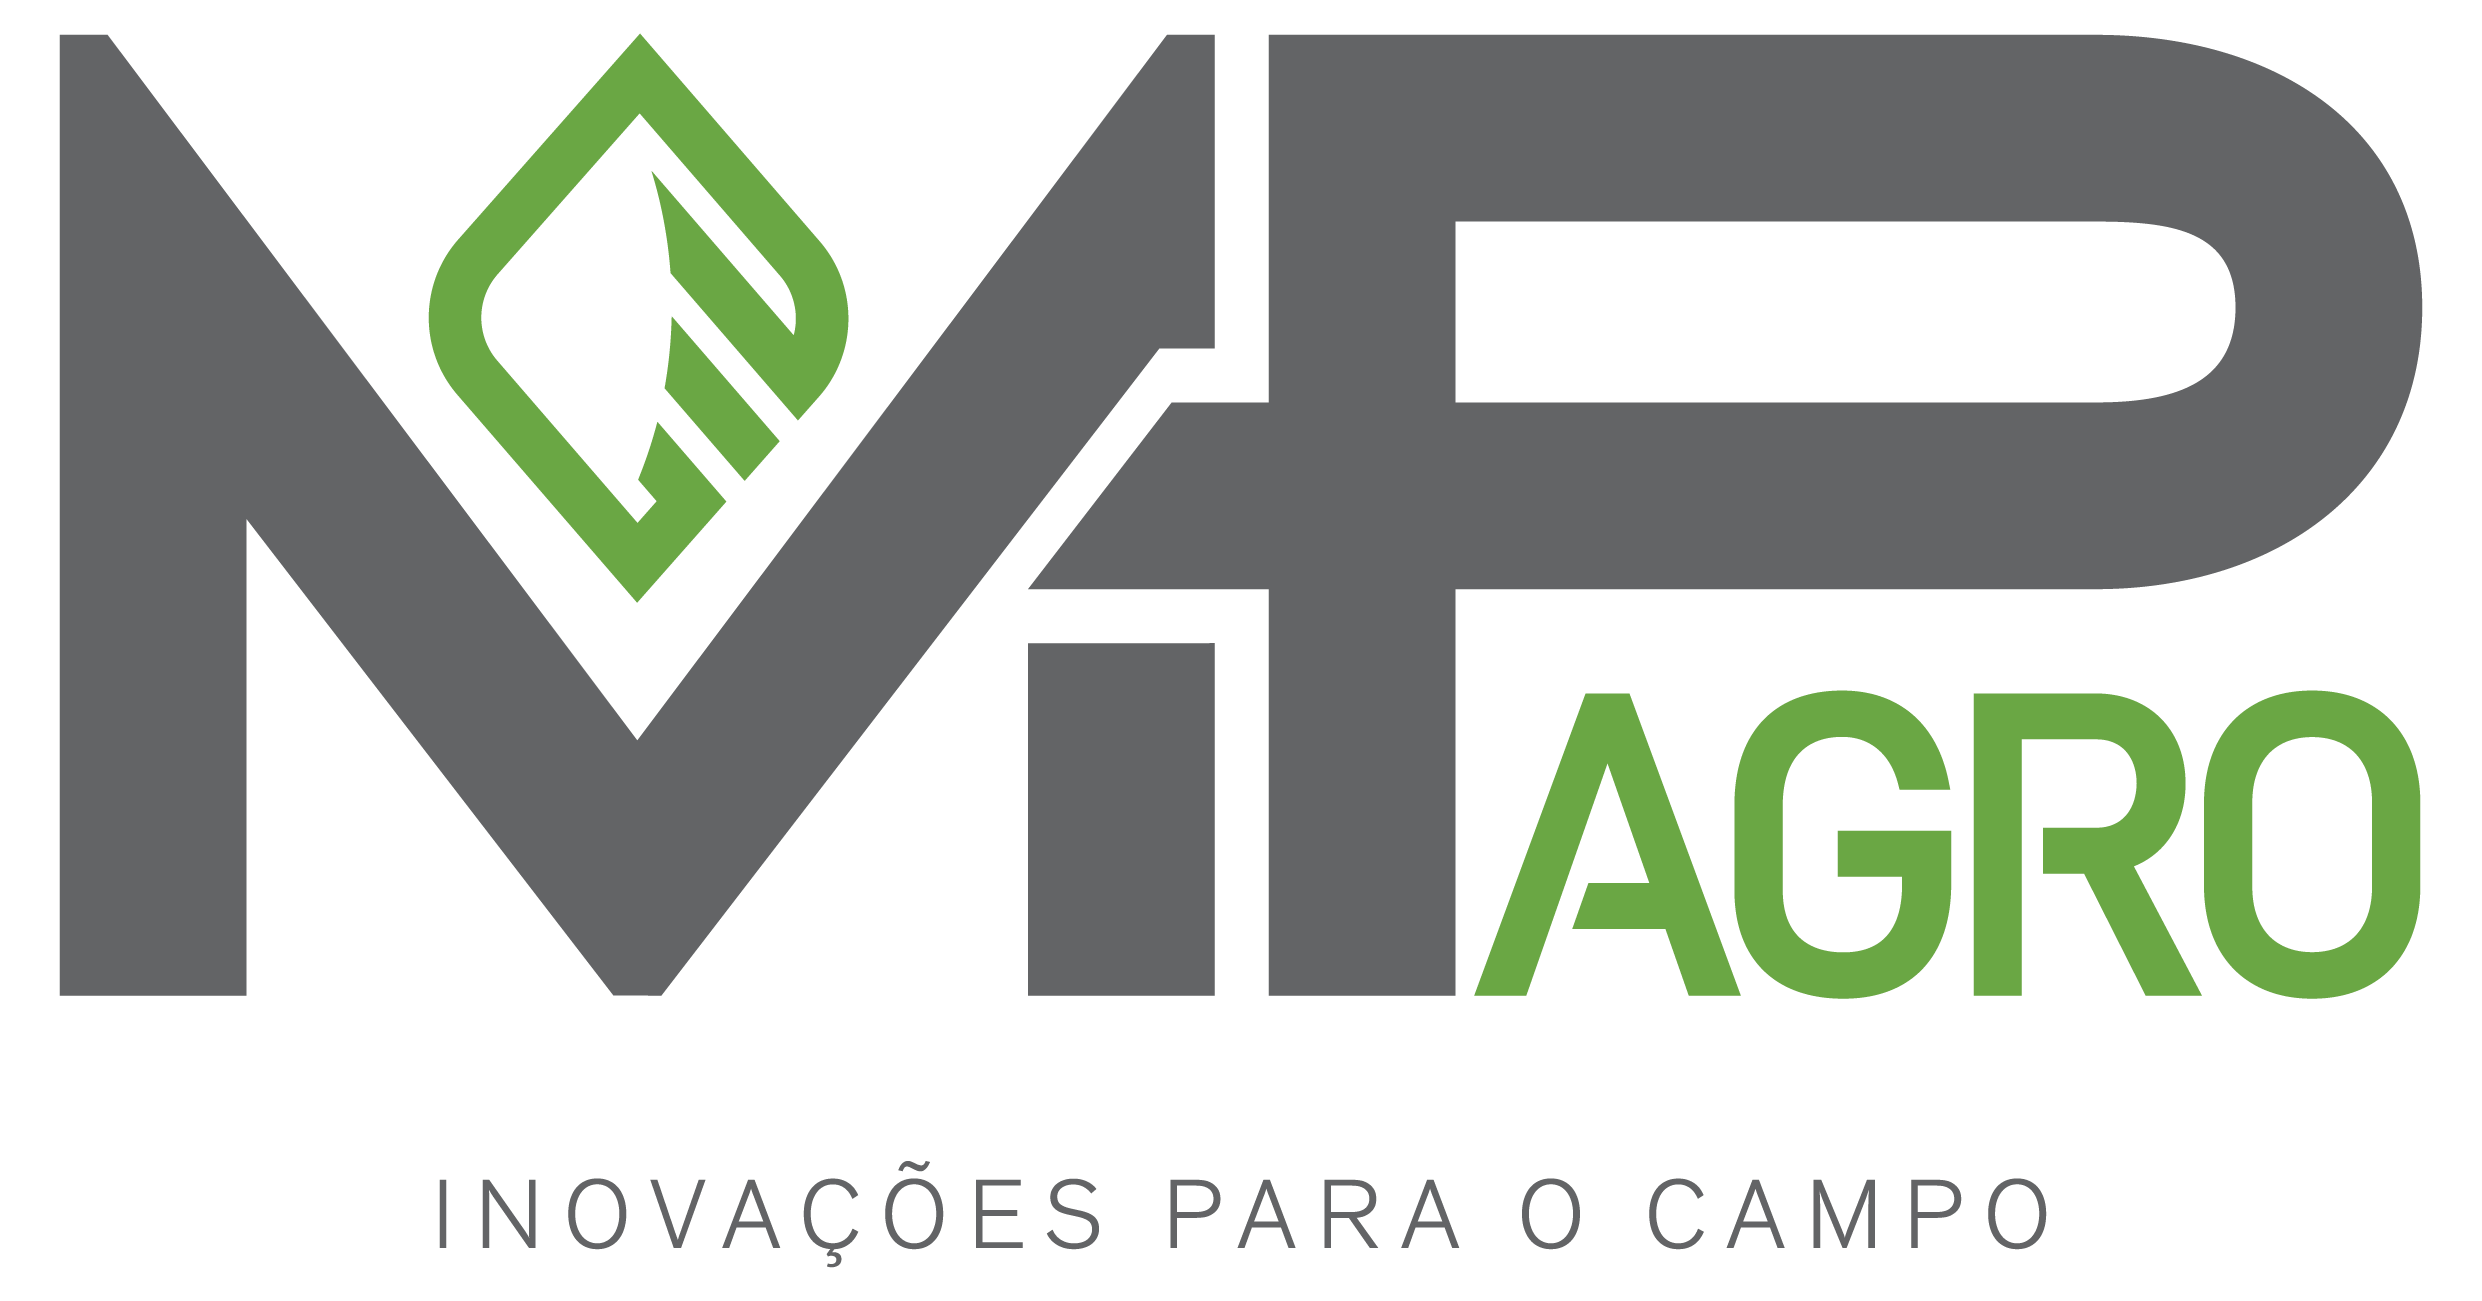  Blog da MP Agro, Inovação e Tecnológica para a Agricultura.